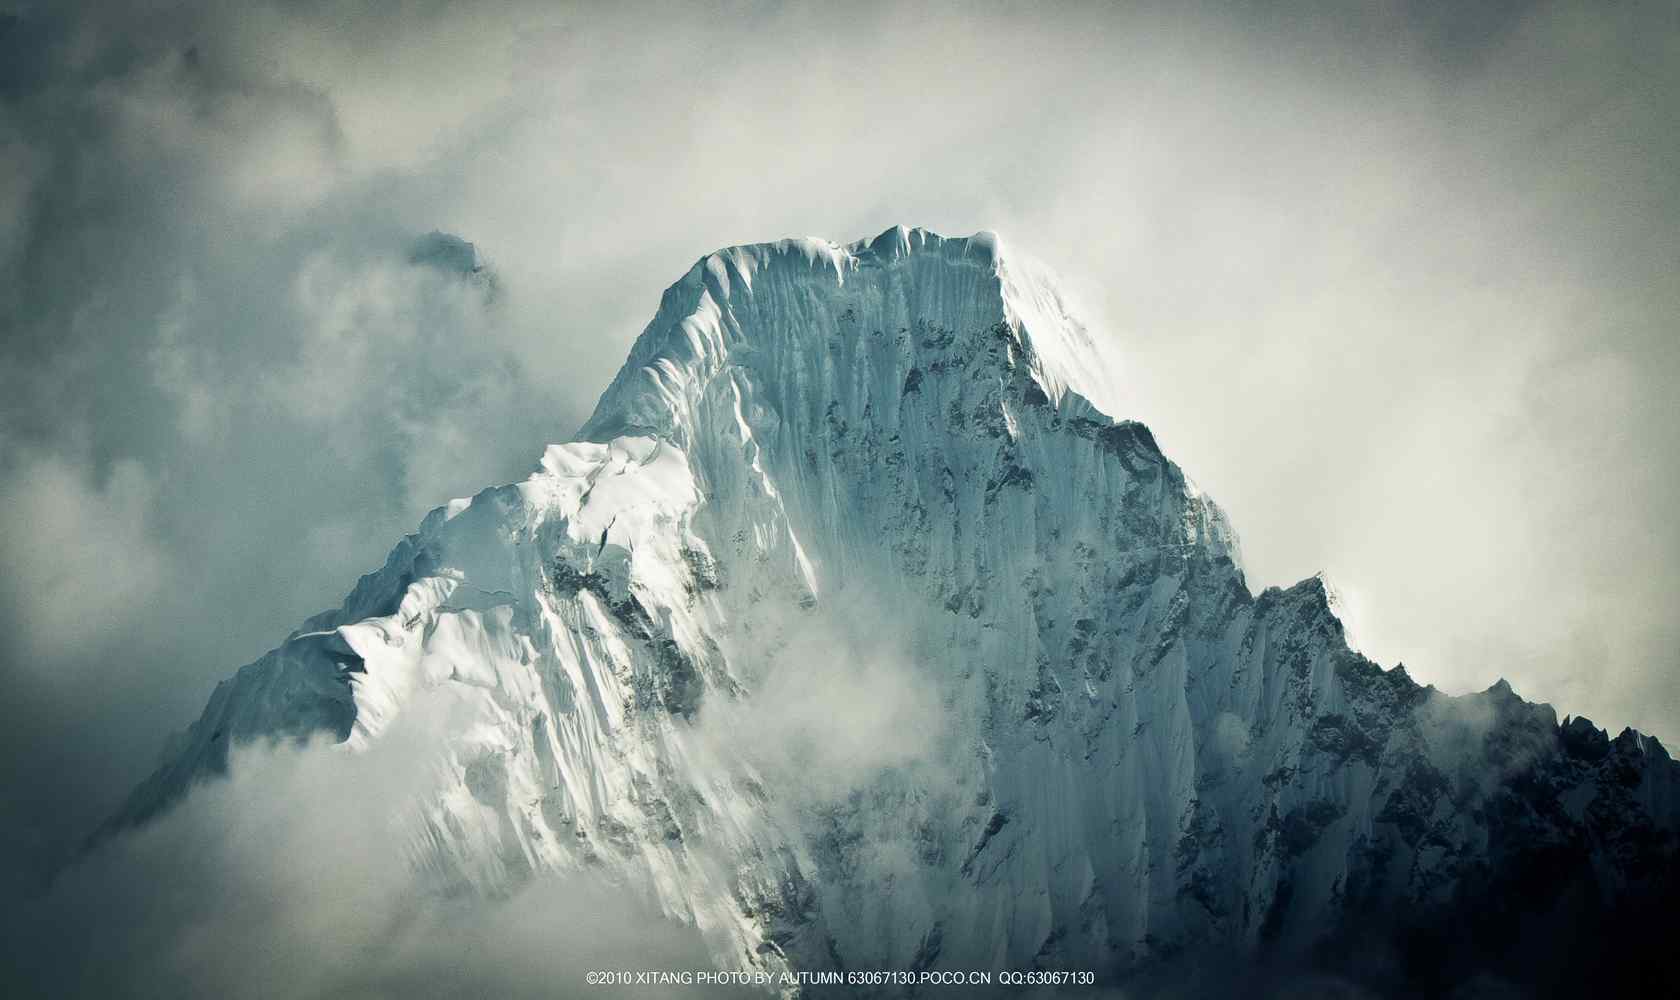 好看的喜马拉雅雪山风景桌面壁纸